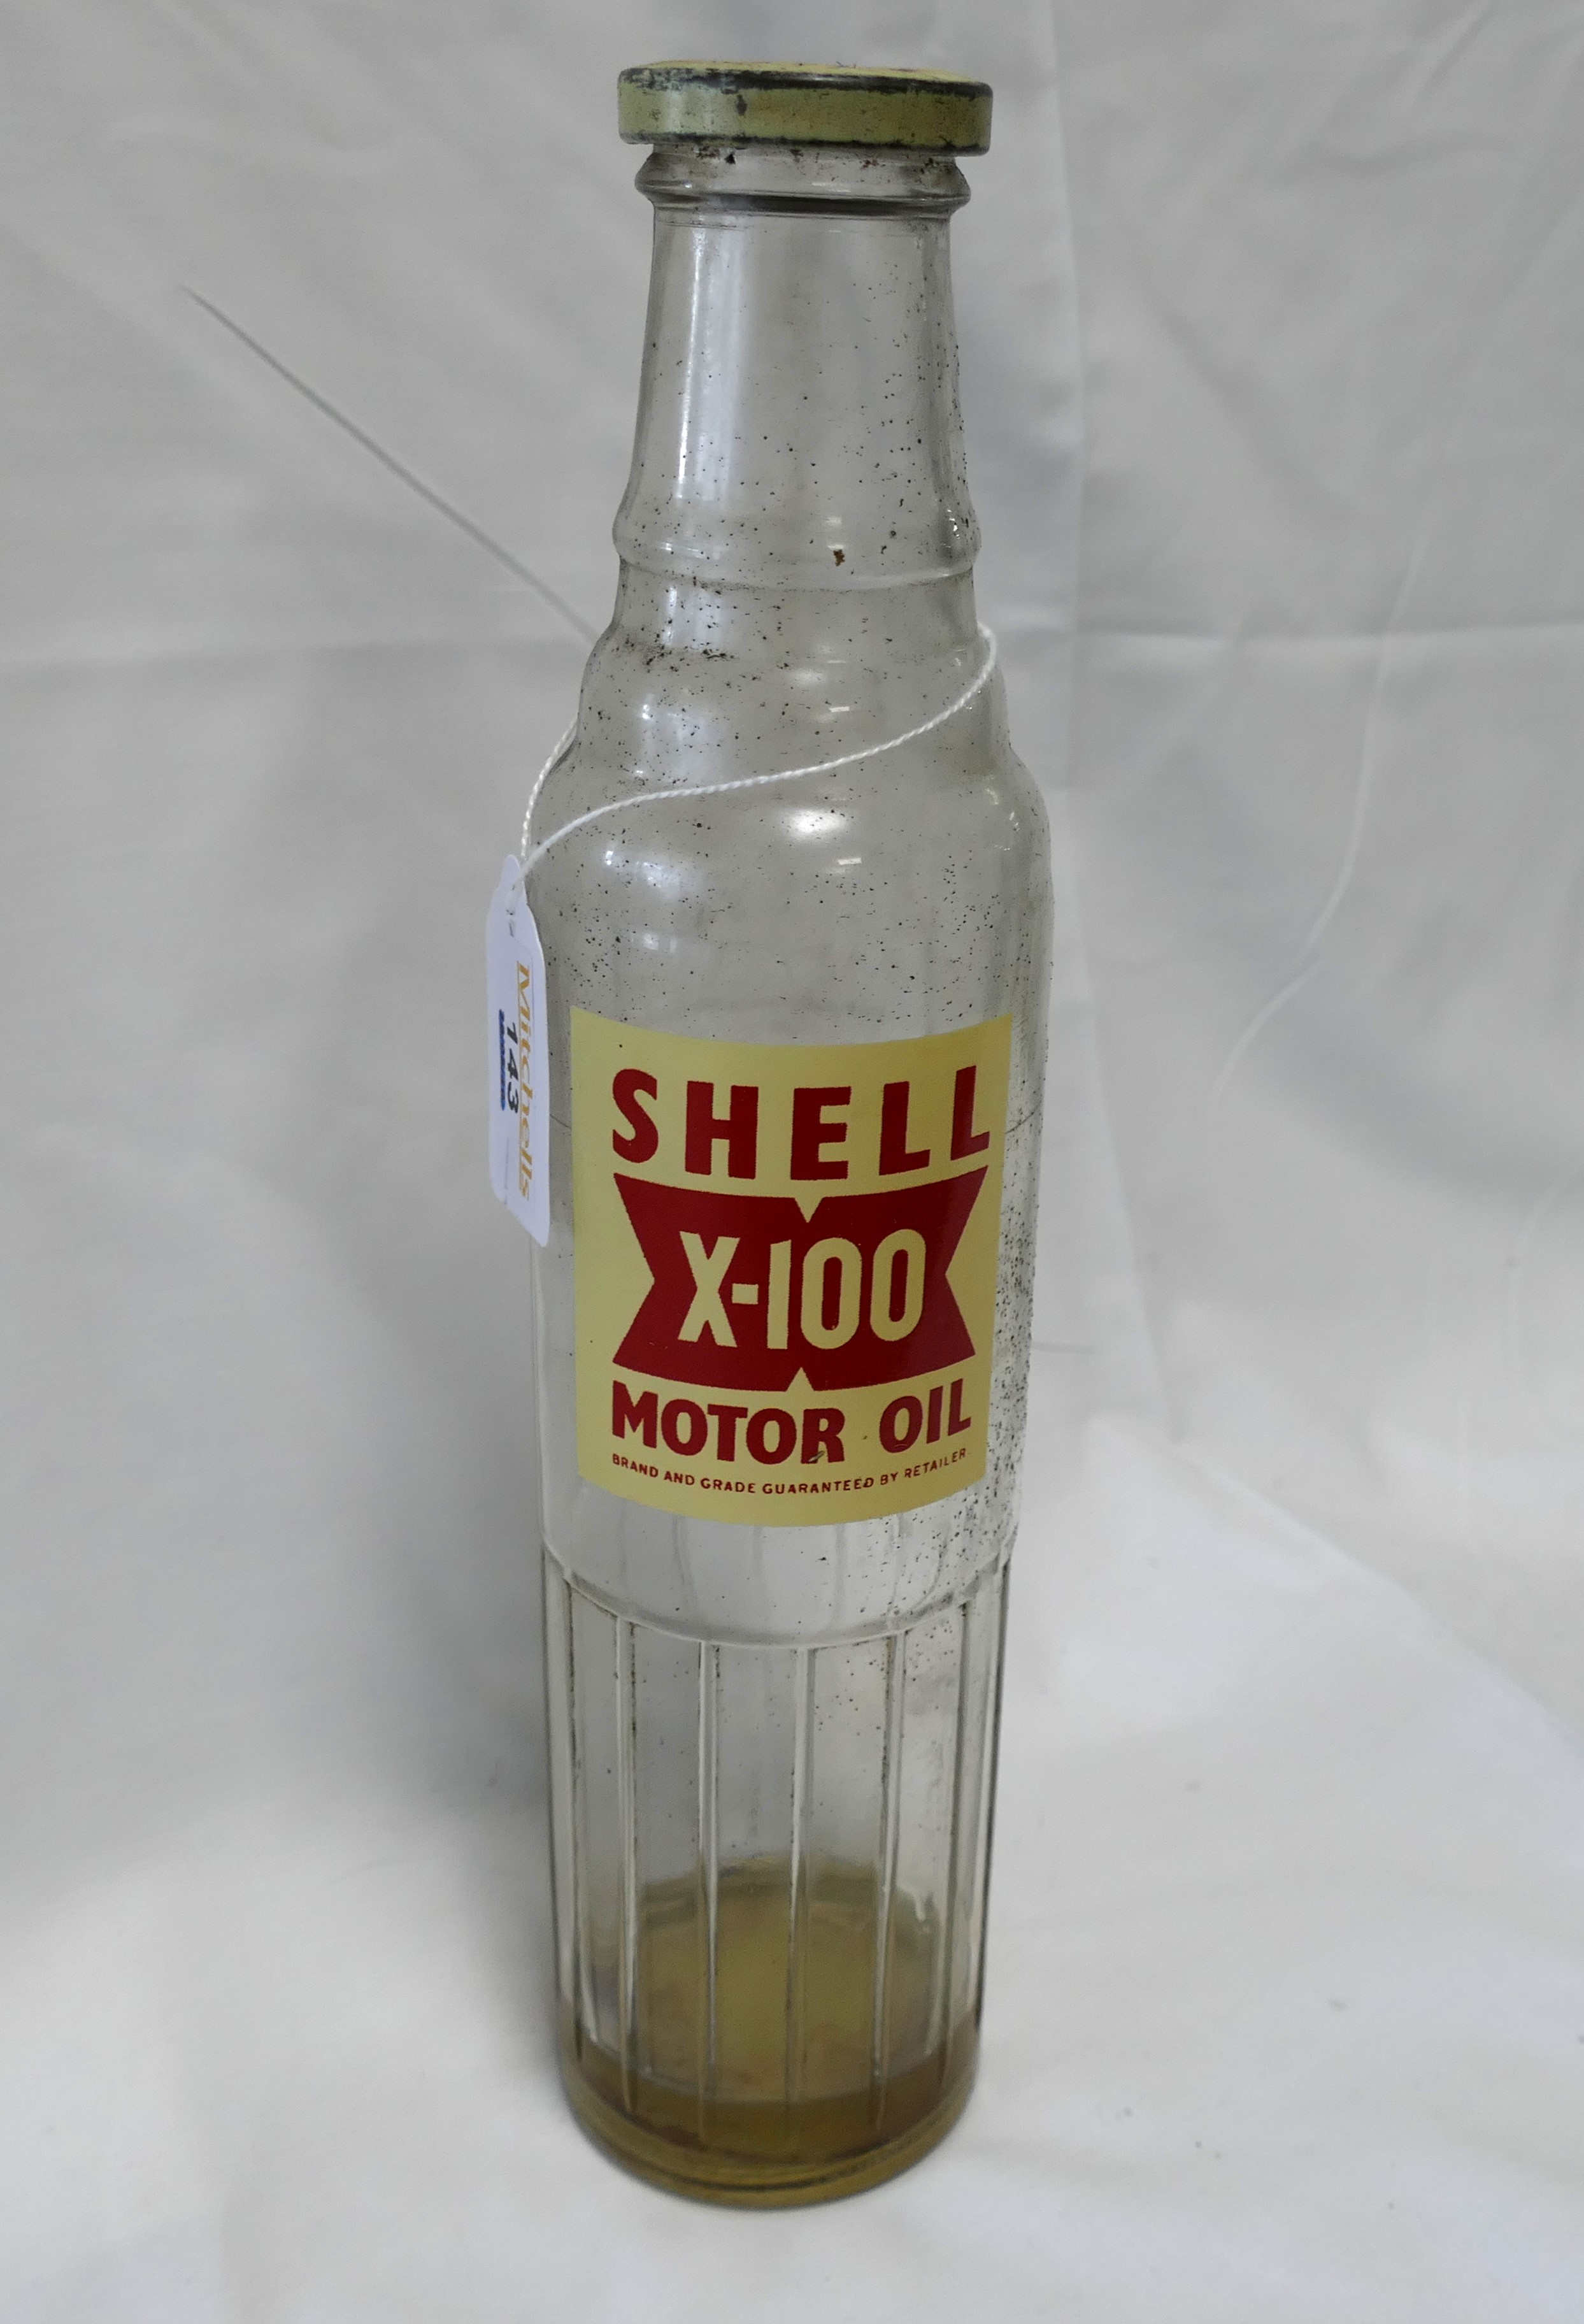 Shell X-100 Motor Oil bottle, height 29